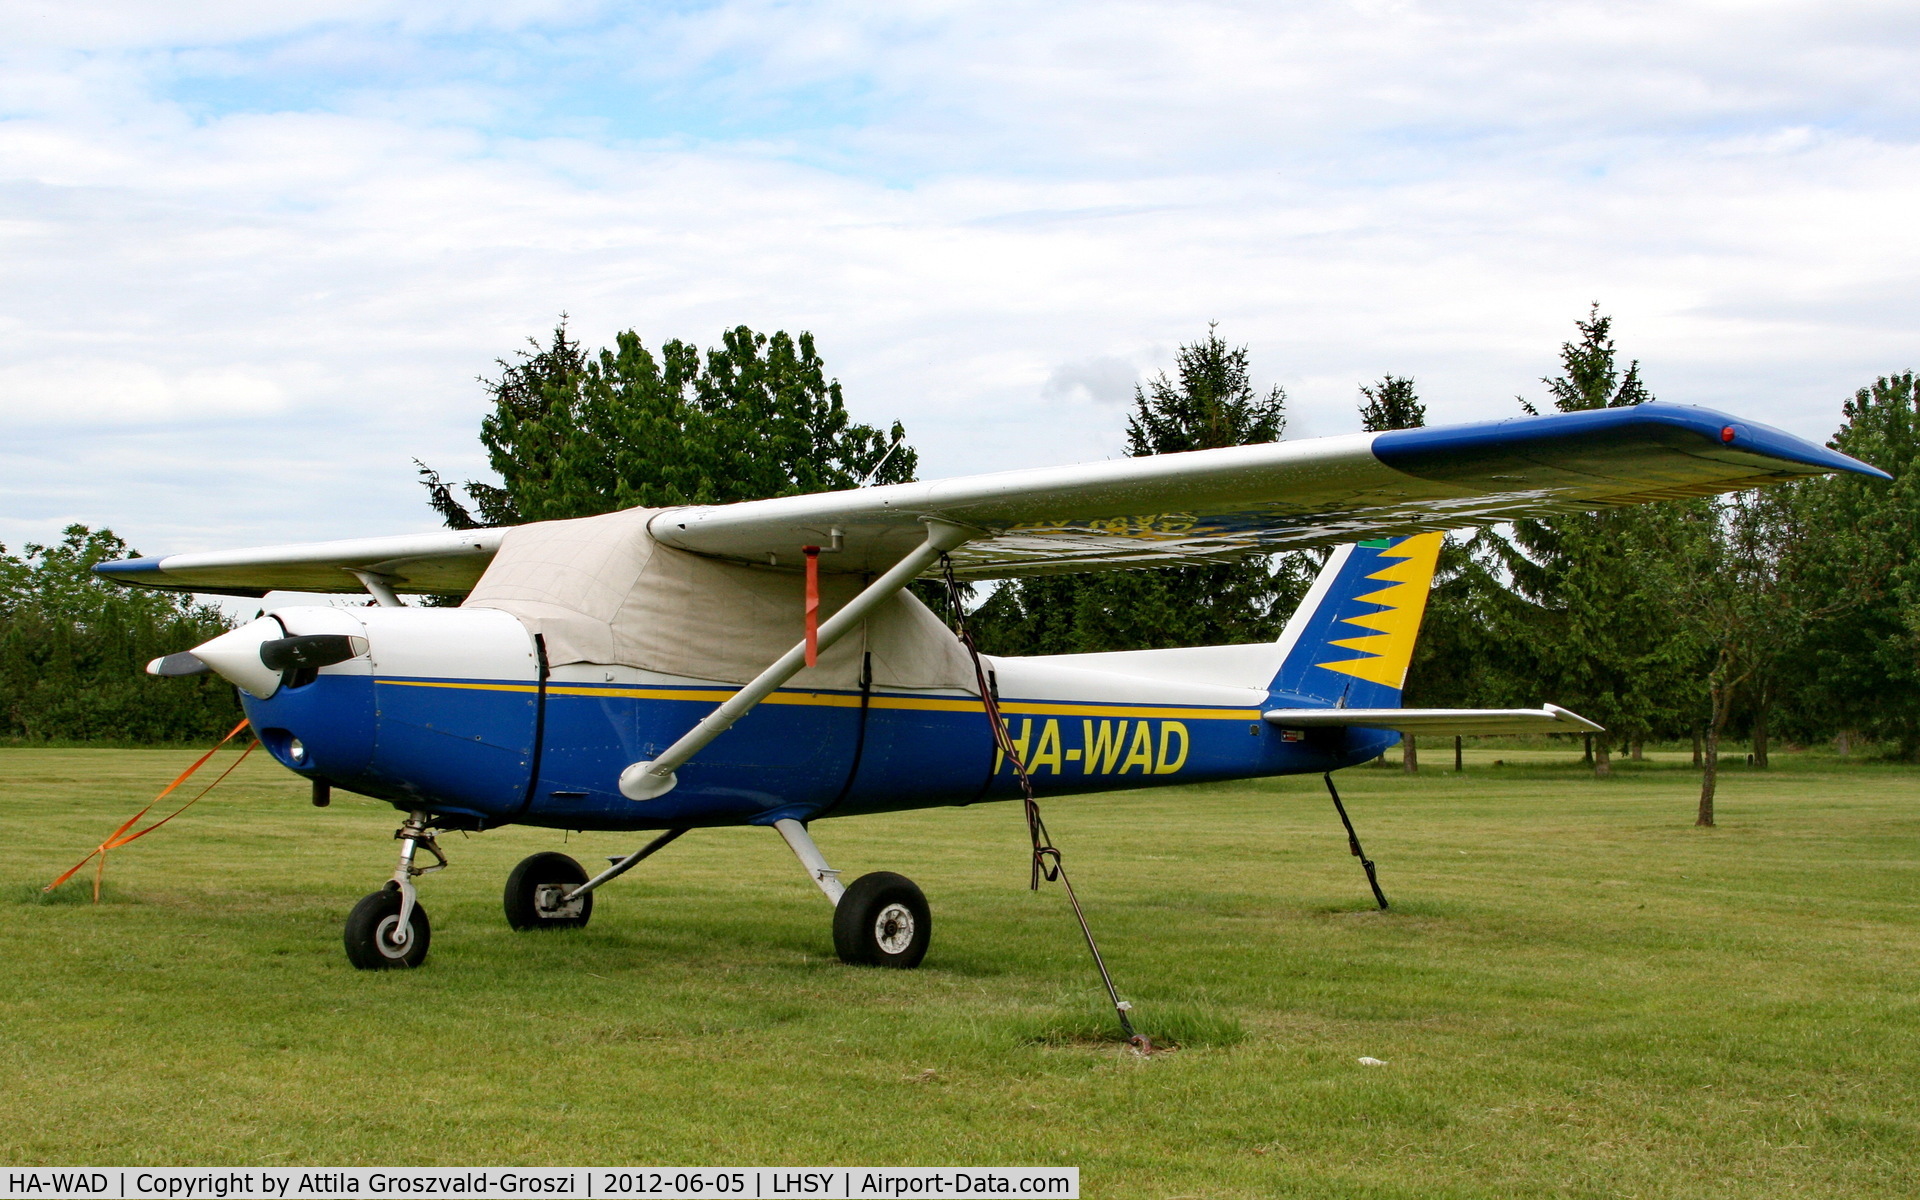 HA-WAD, 1977 Cessna 152 C/N 15280736, Szombathely Airfield, Hungary - LHSY